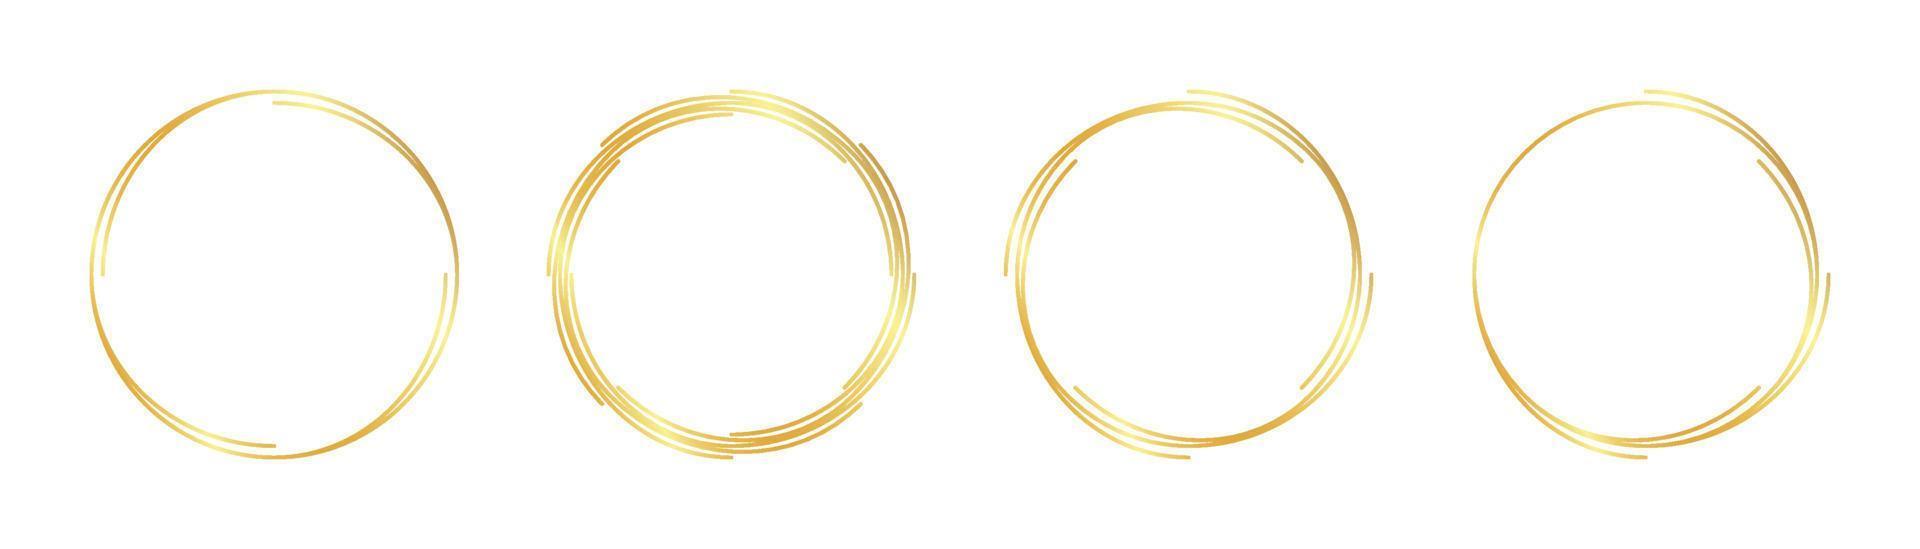 circle gold frame vector